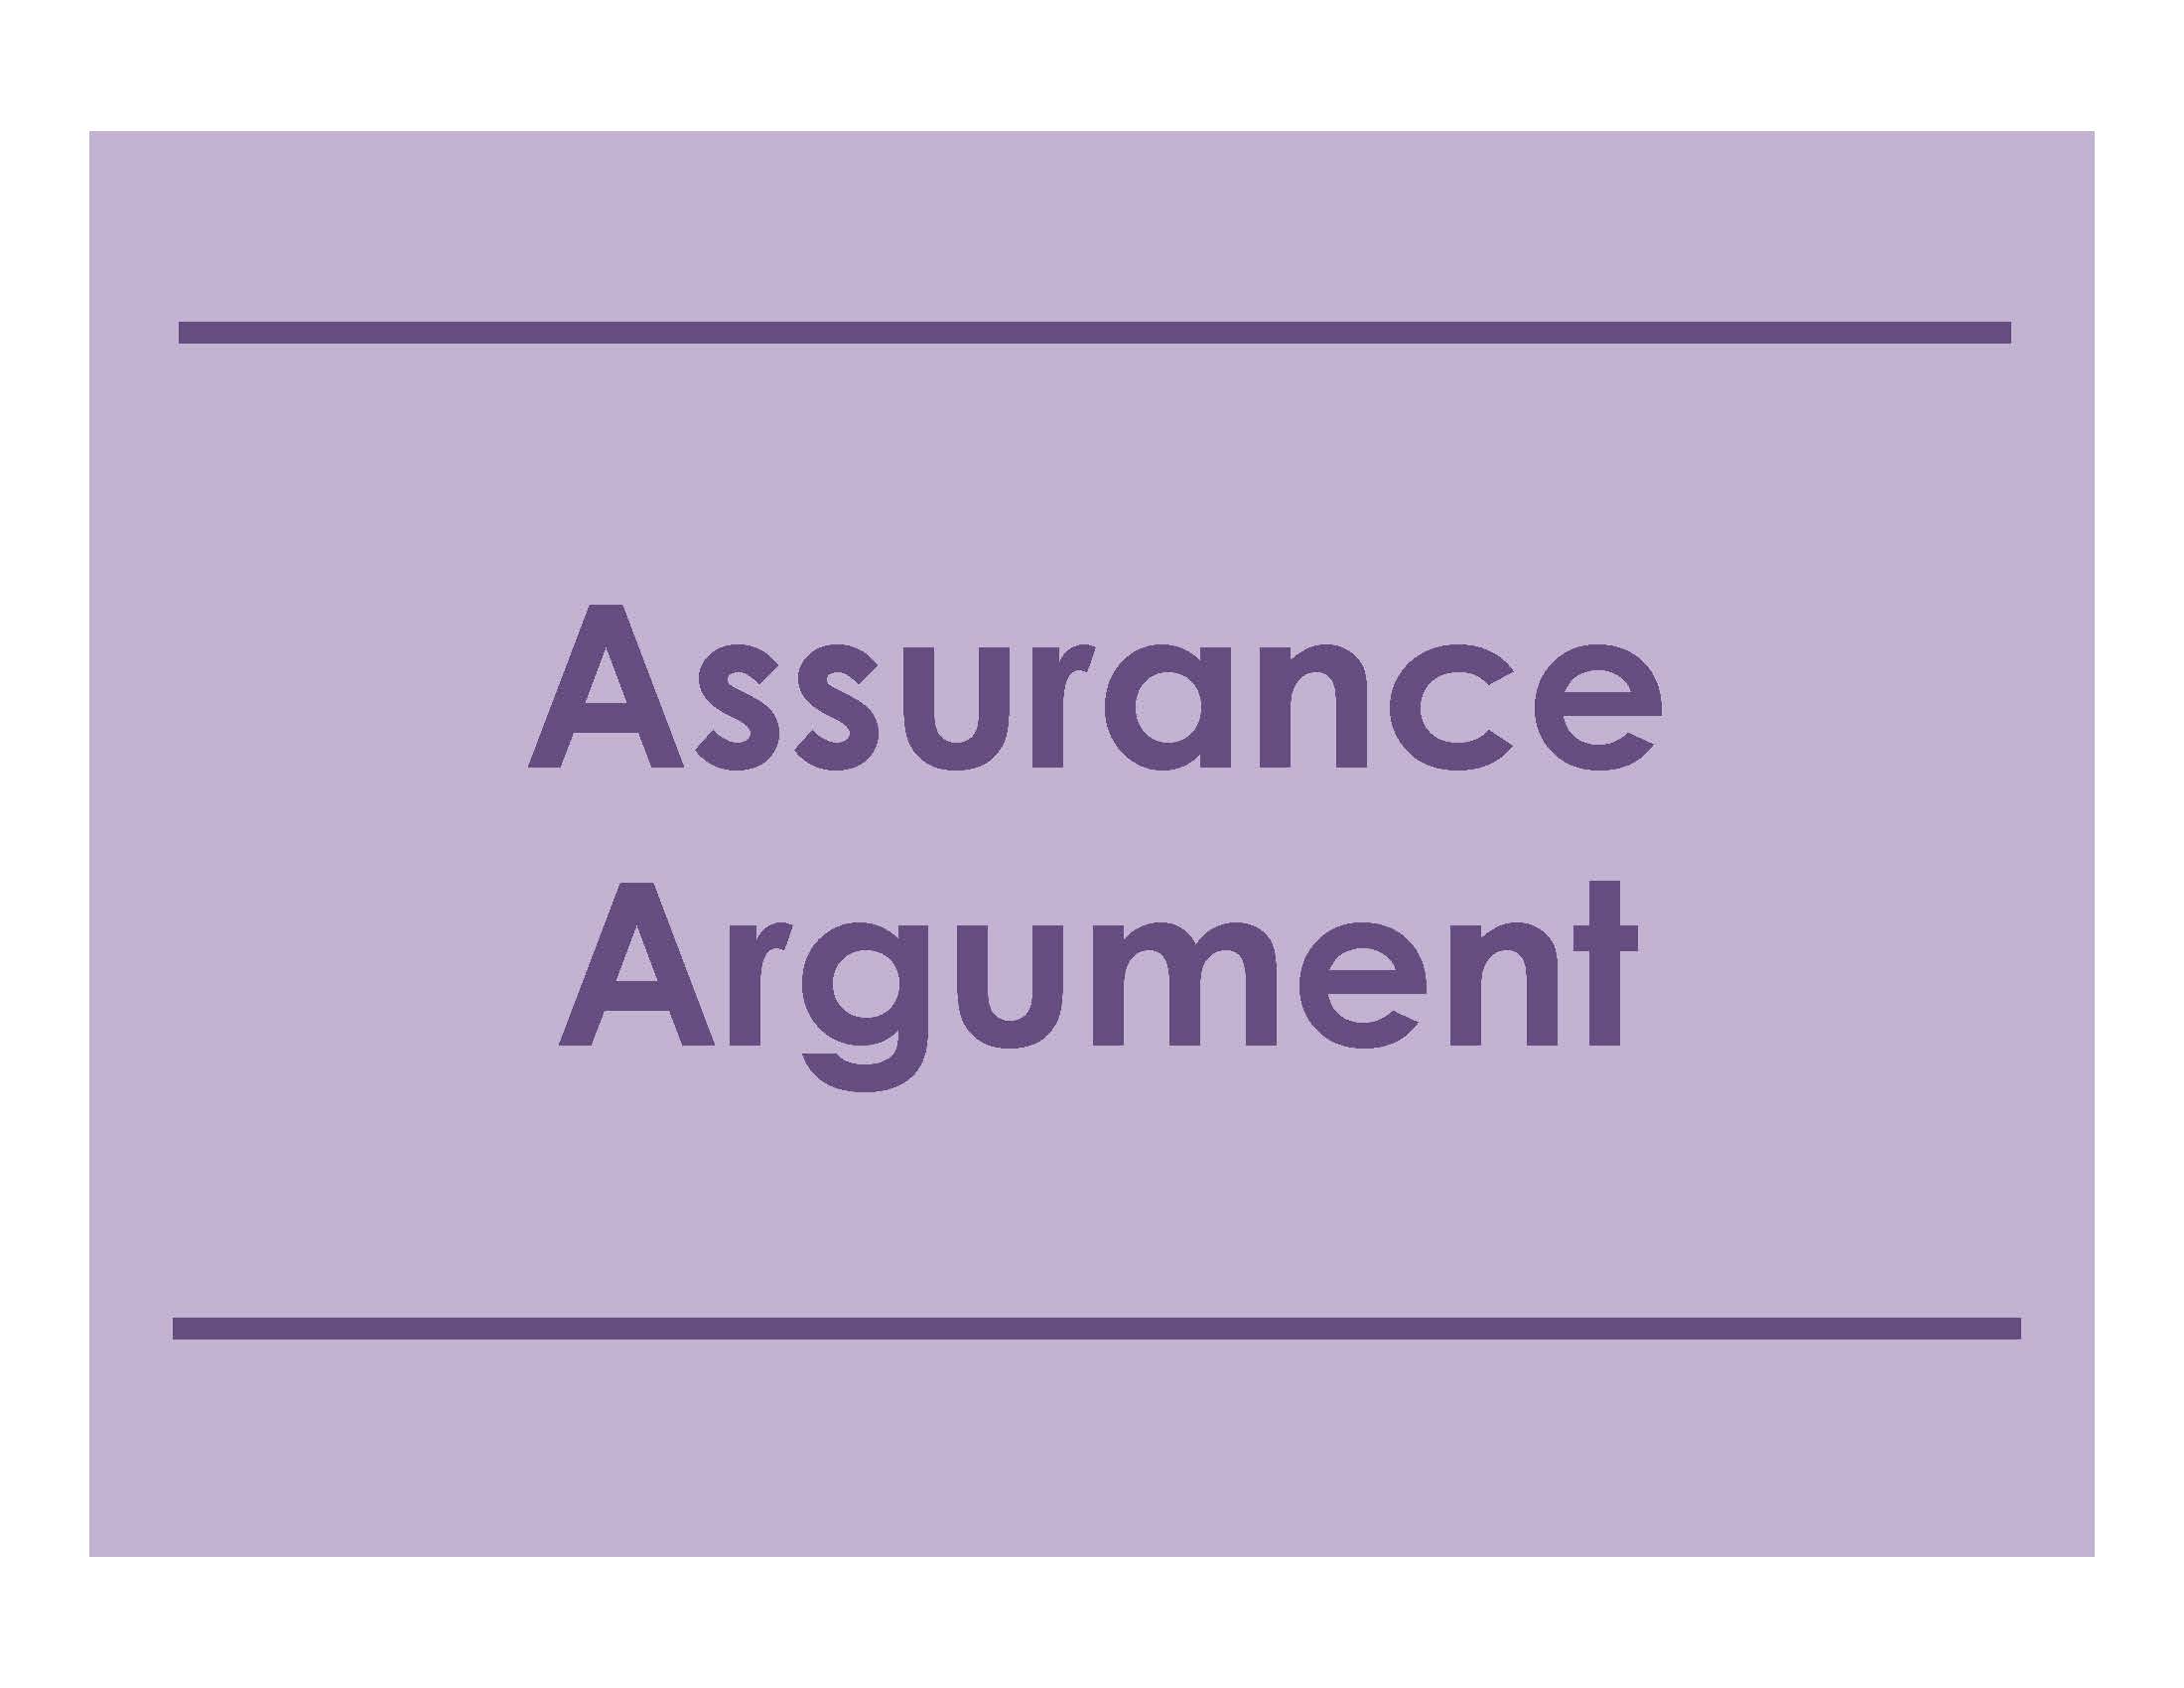 Assurance Argument 2022